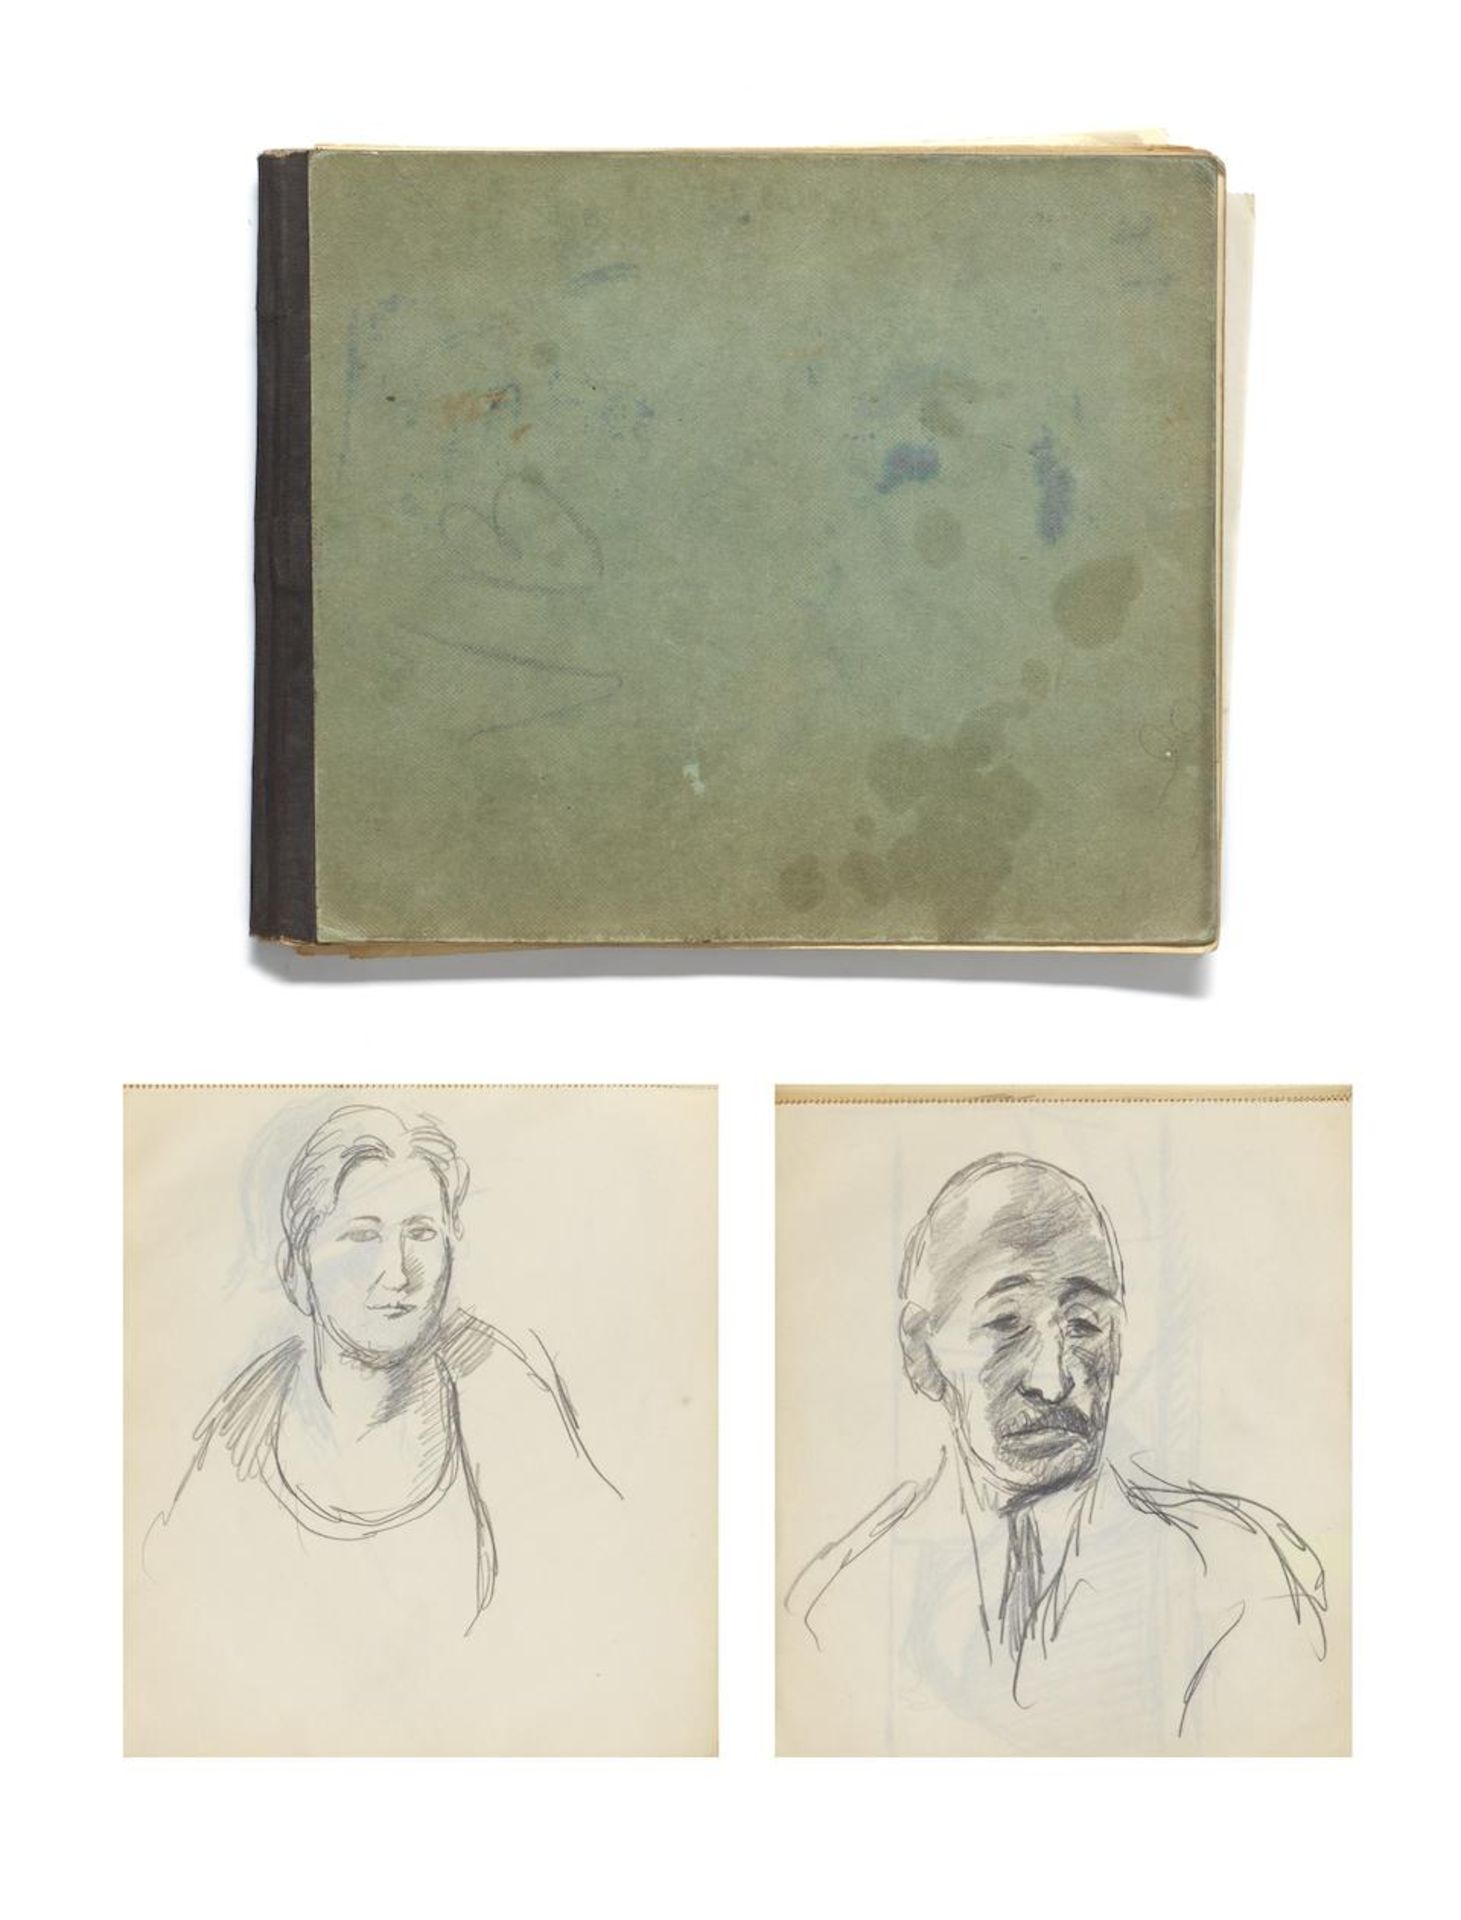 Vanessa Bell (British, 1879-1961) Sketchbook (Venice) 1926 17.2 x 20.9 cm. (6 3/4 x 8 1/4 in.)